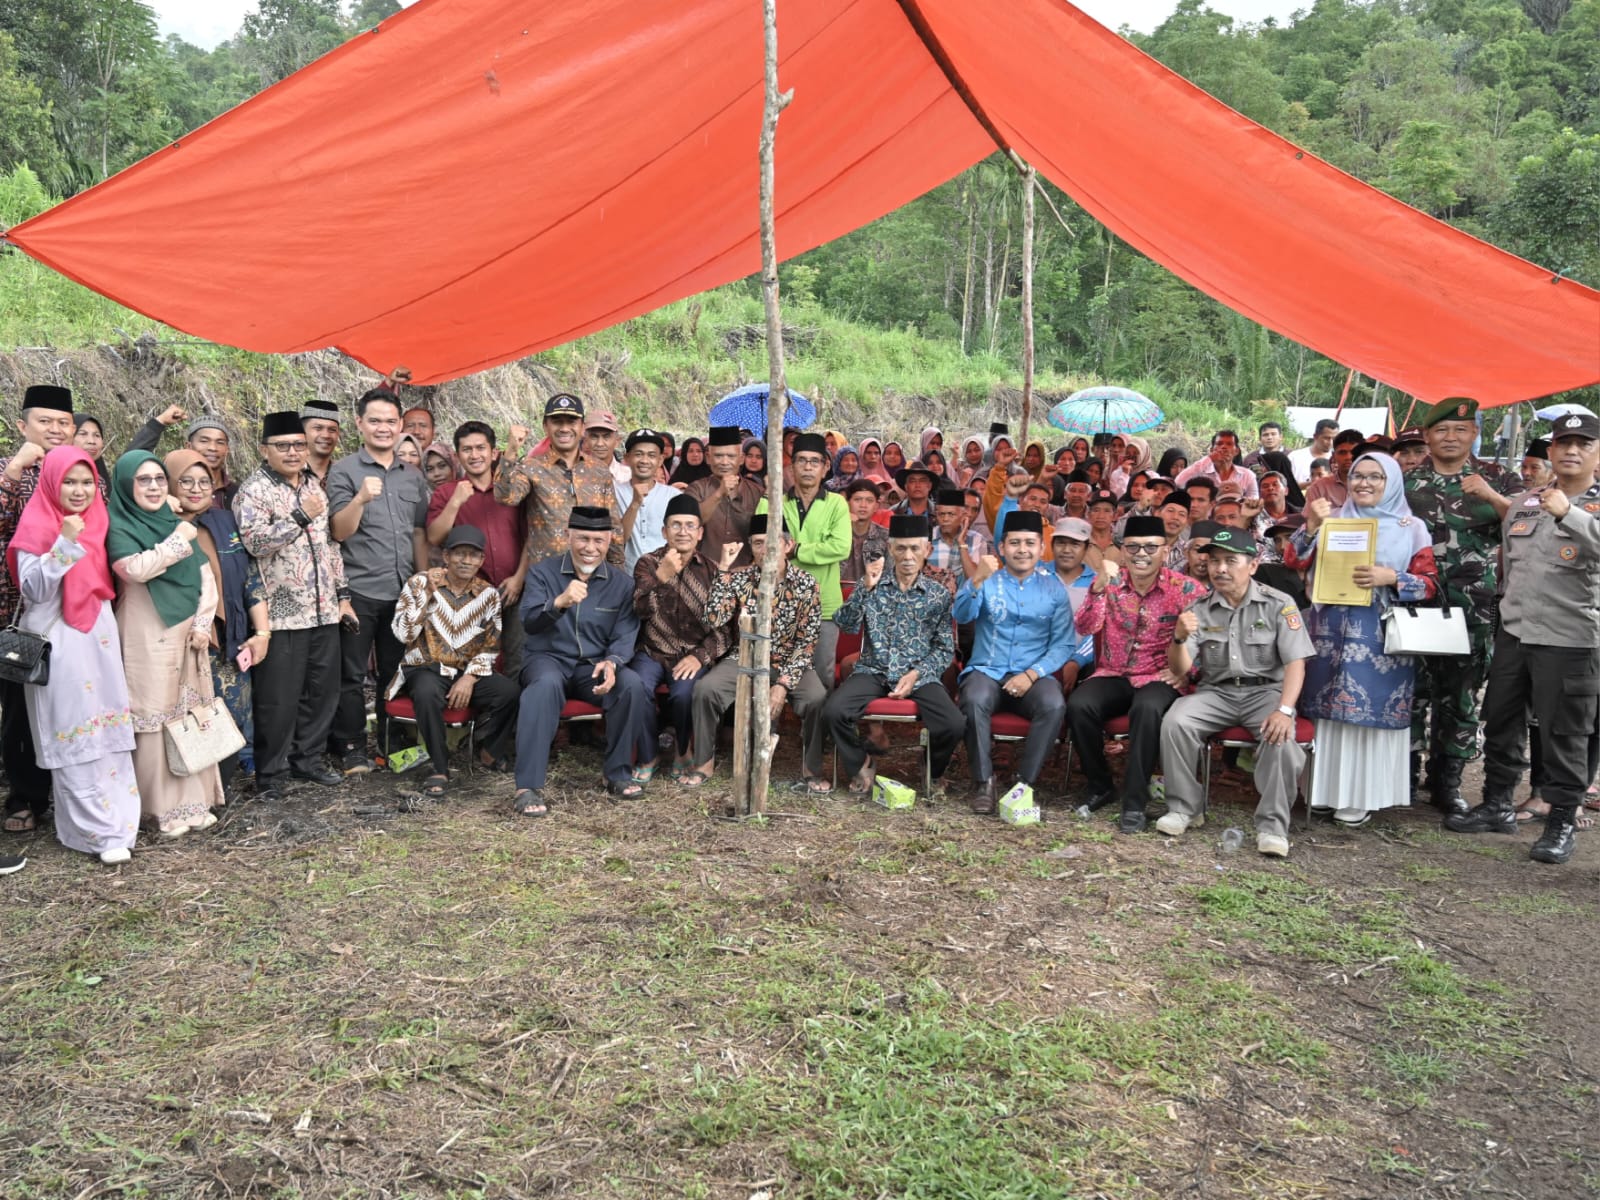 Gubernur Sumbar Mahyeldi bersama masyarakat Malalak setelah menerima surat keterangan hibah tanah untuk pembangunan SMK. Foto Adpsb. 